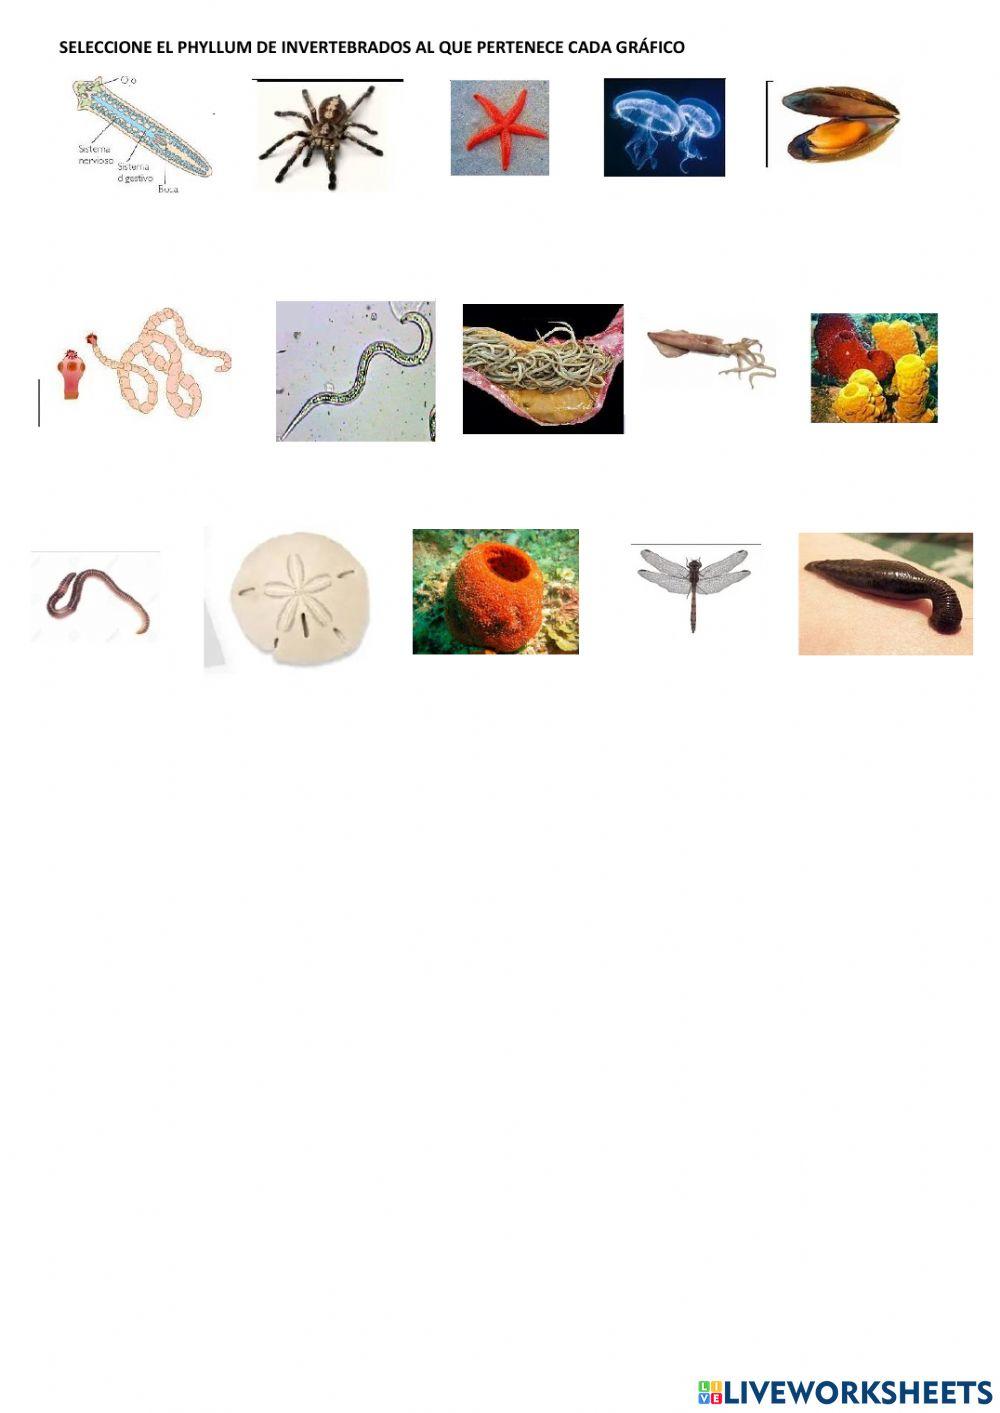 Anatomía e invertebrado